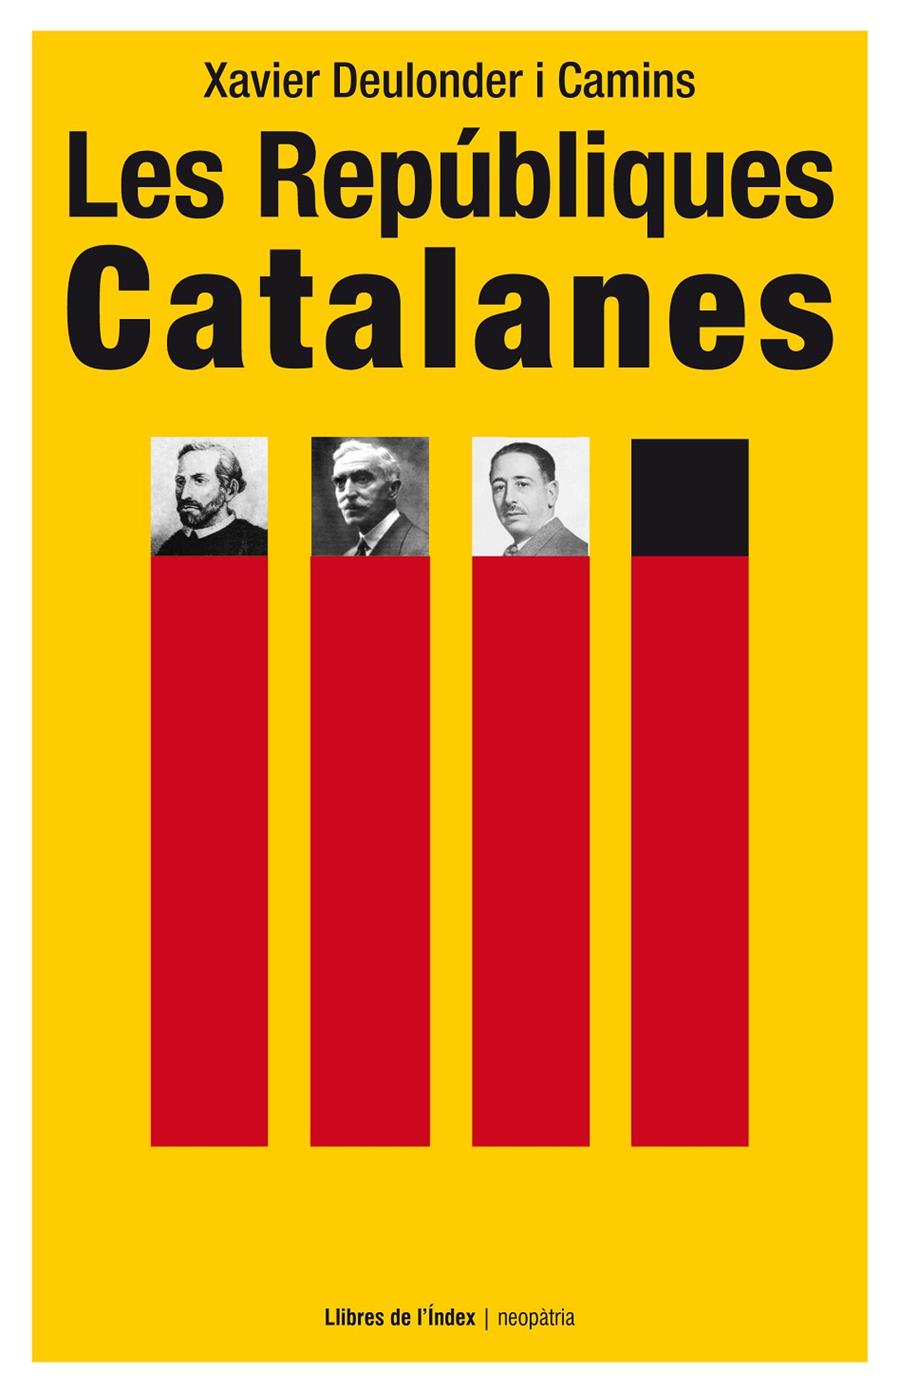 Les Repúbliques Catalanes | Deulonder i Camins, Xavier | Cooperativa autogestionària